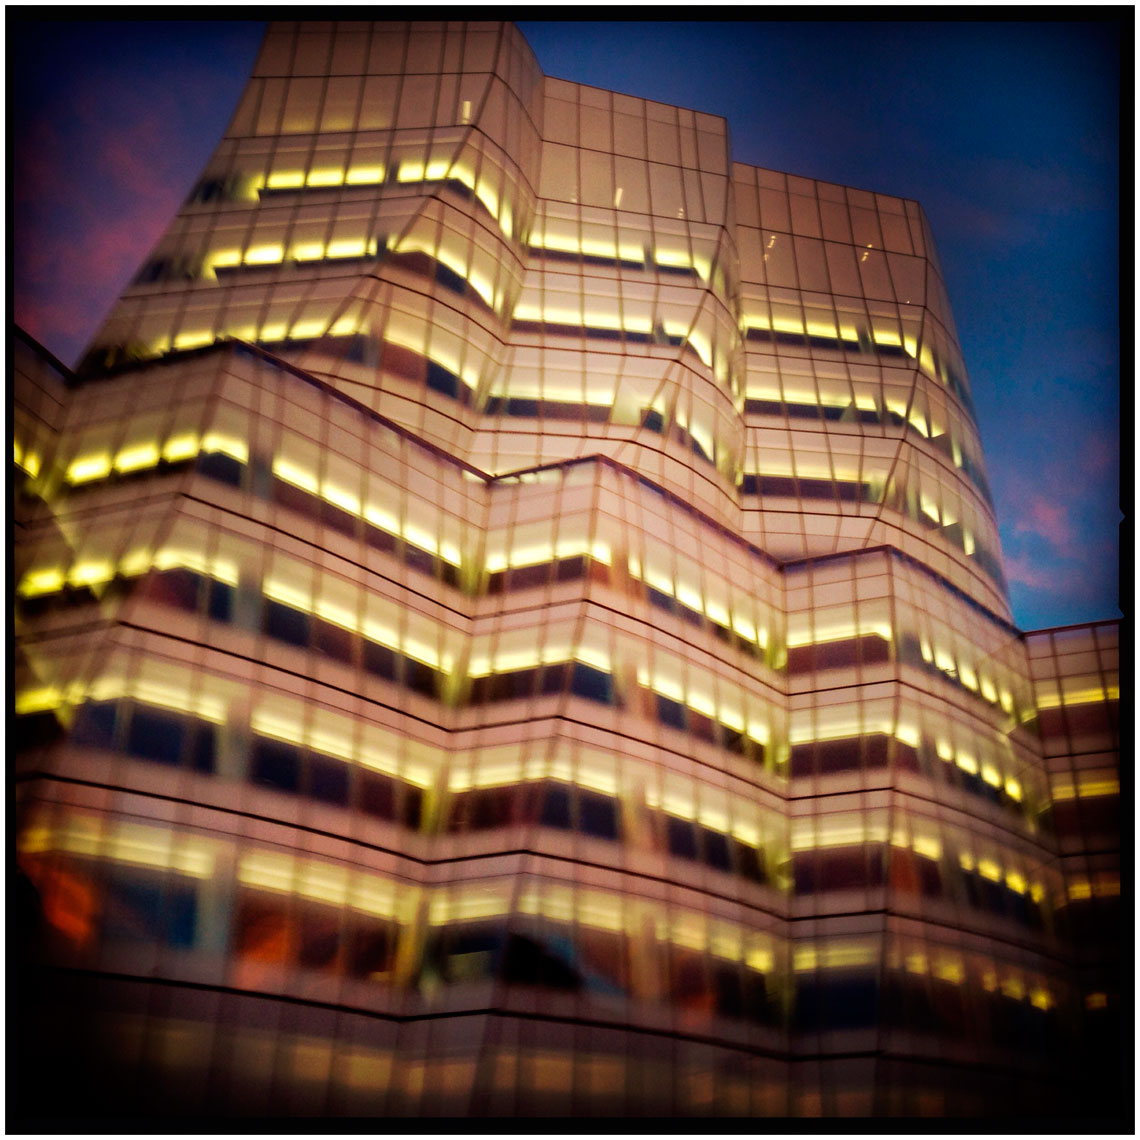 Illuminated Building